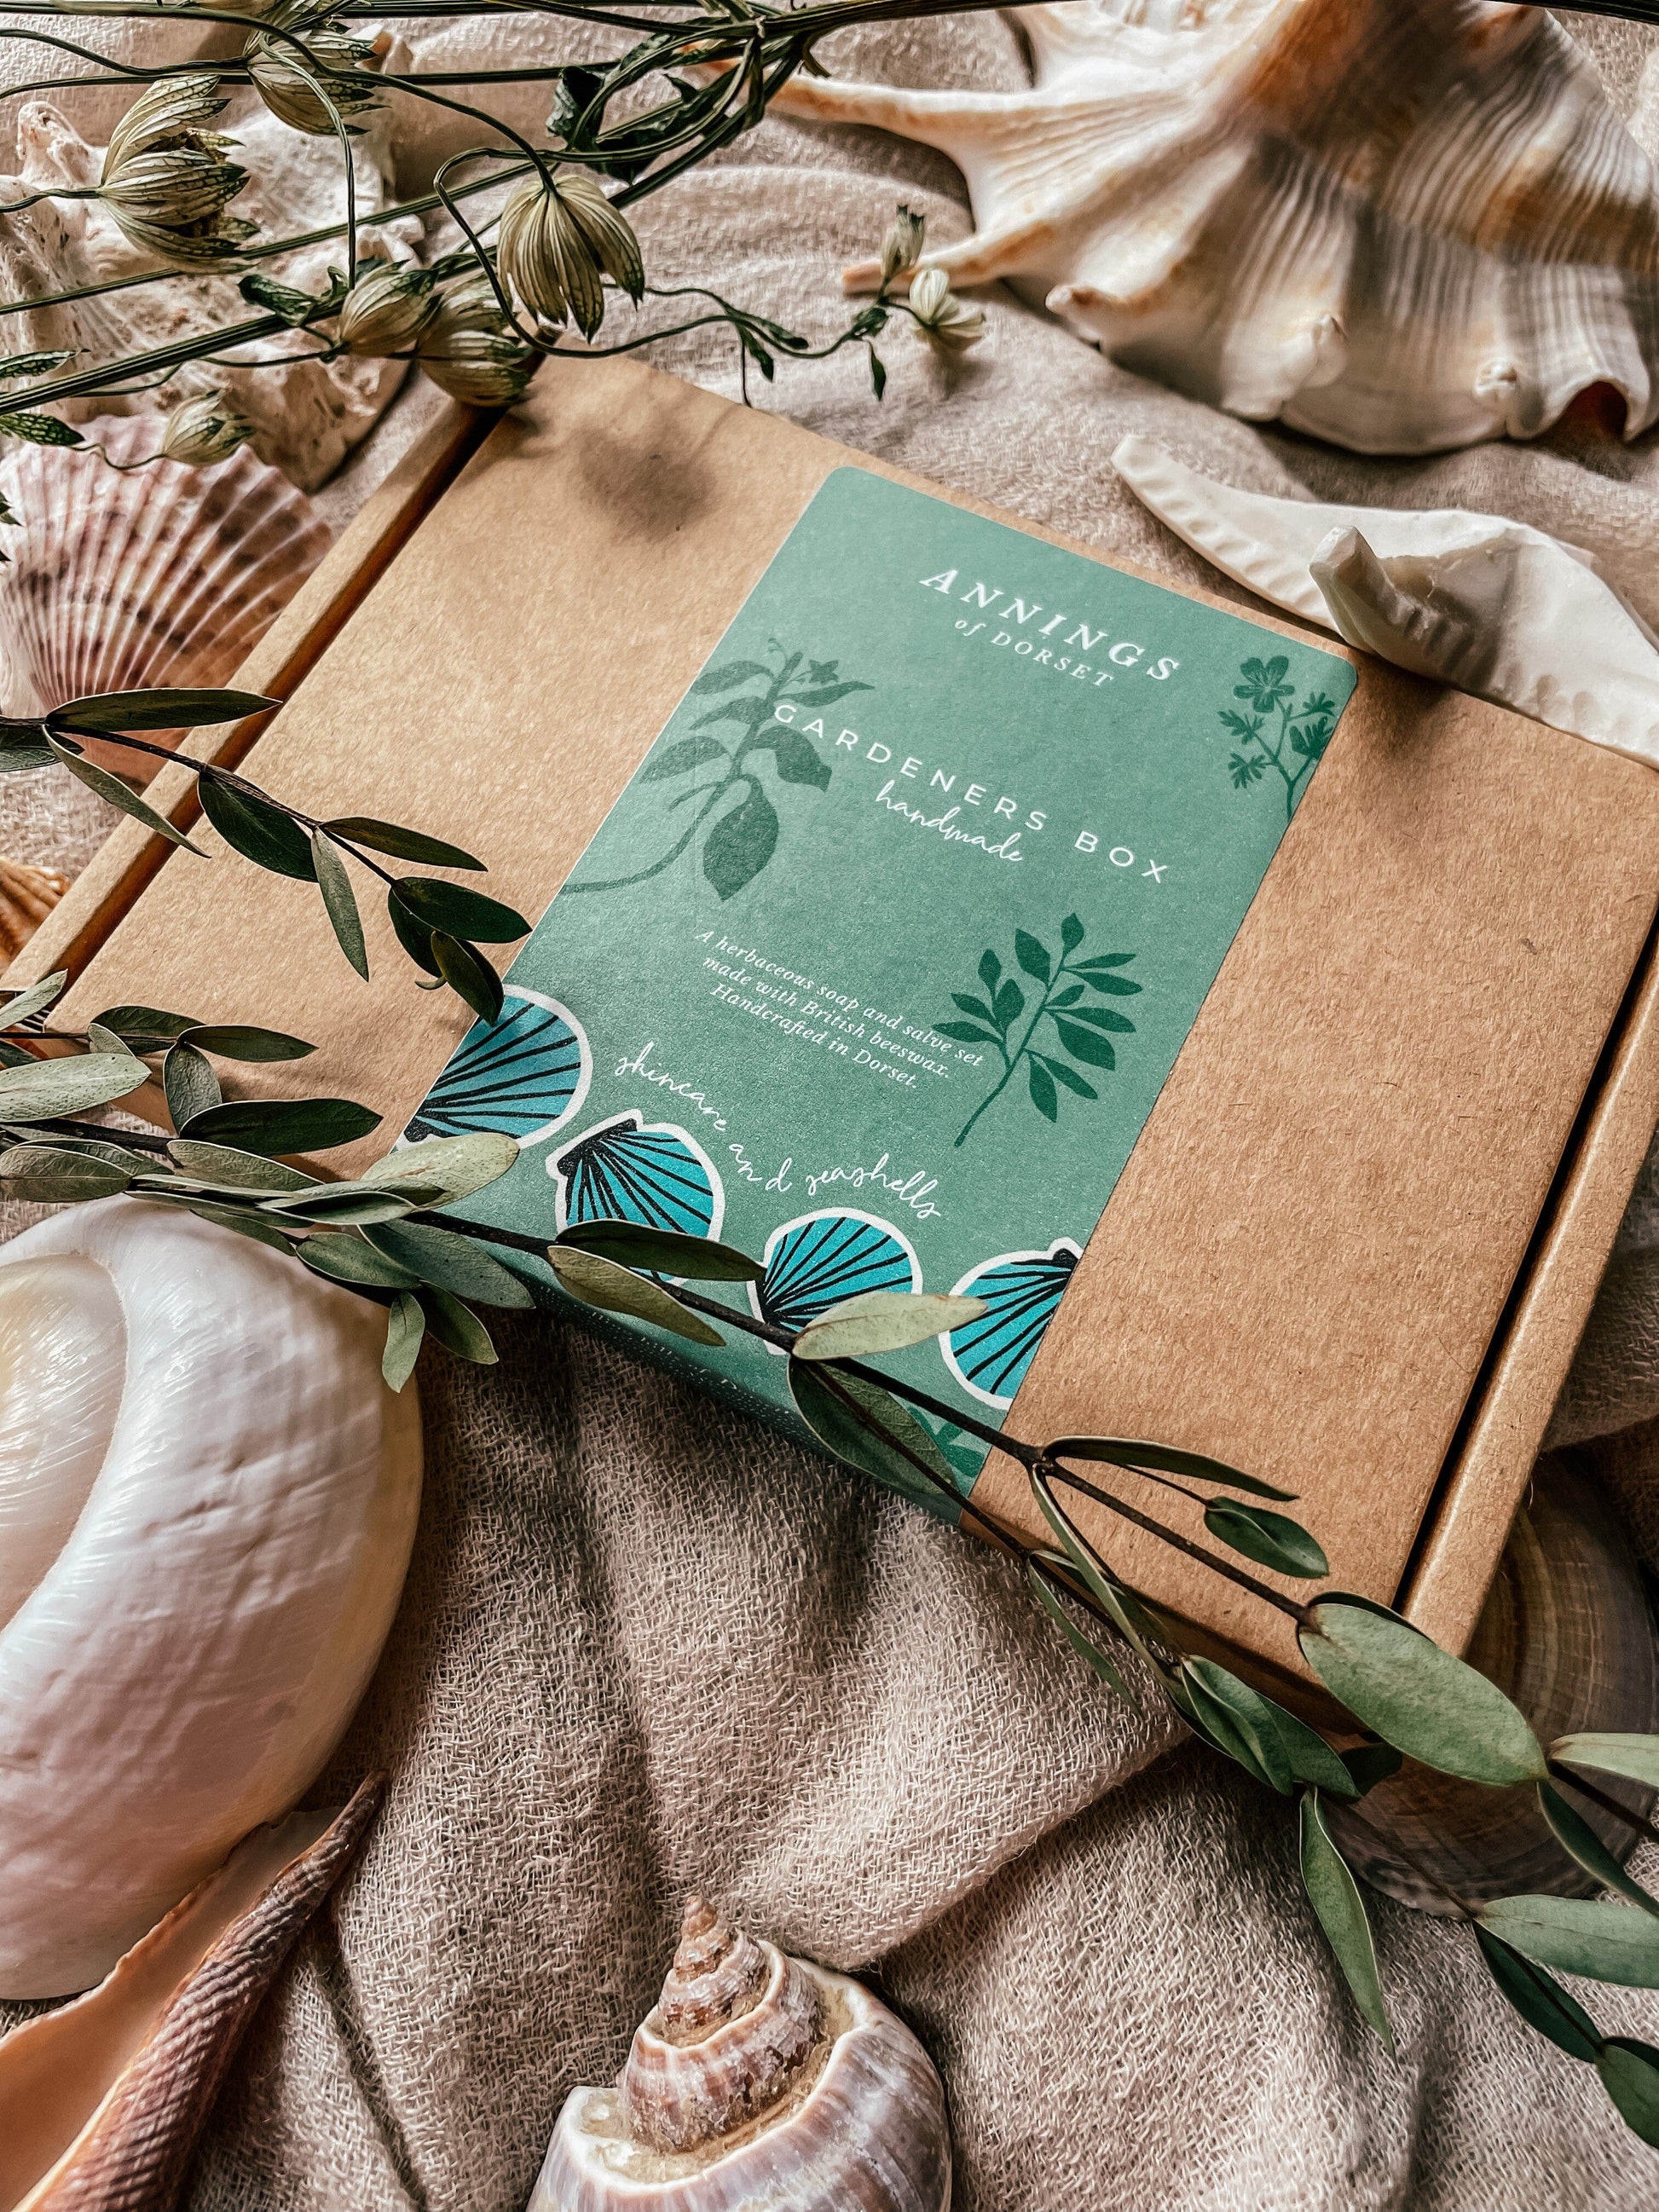 Annings of Dorset - The Gardeners’ Box: Handmade Gift Set, Soap and Salve Gardeners Gift Set Annings of Dorset 